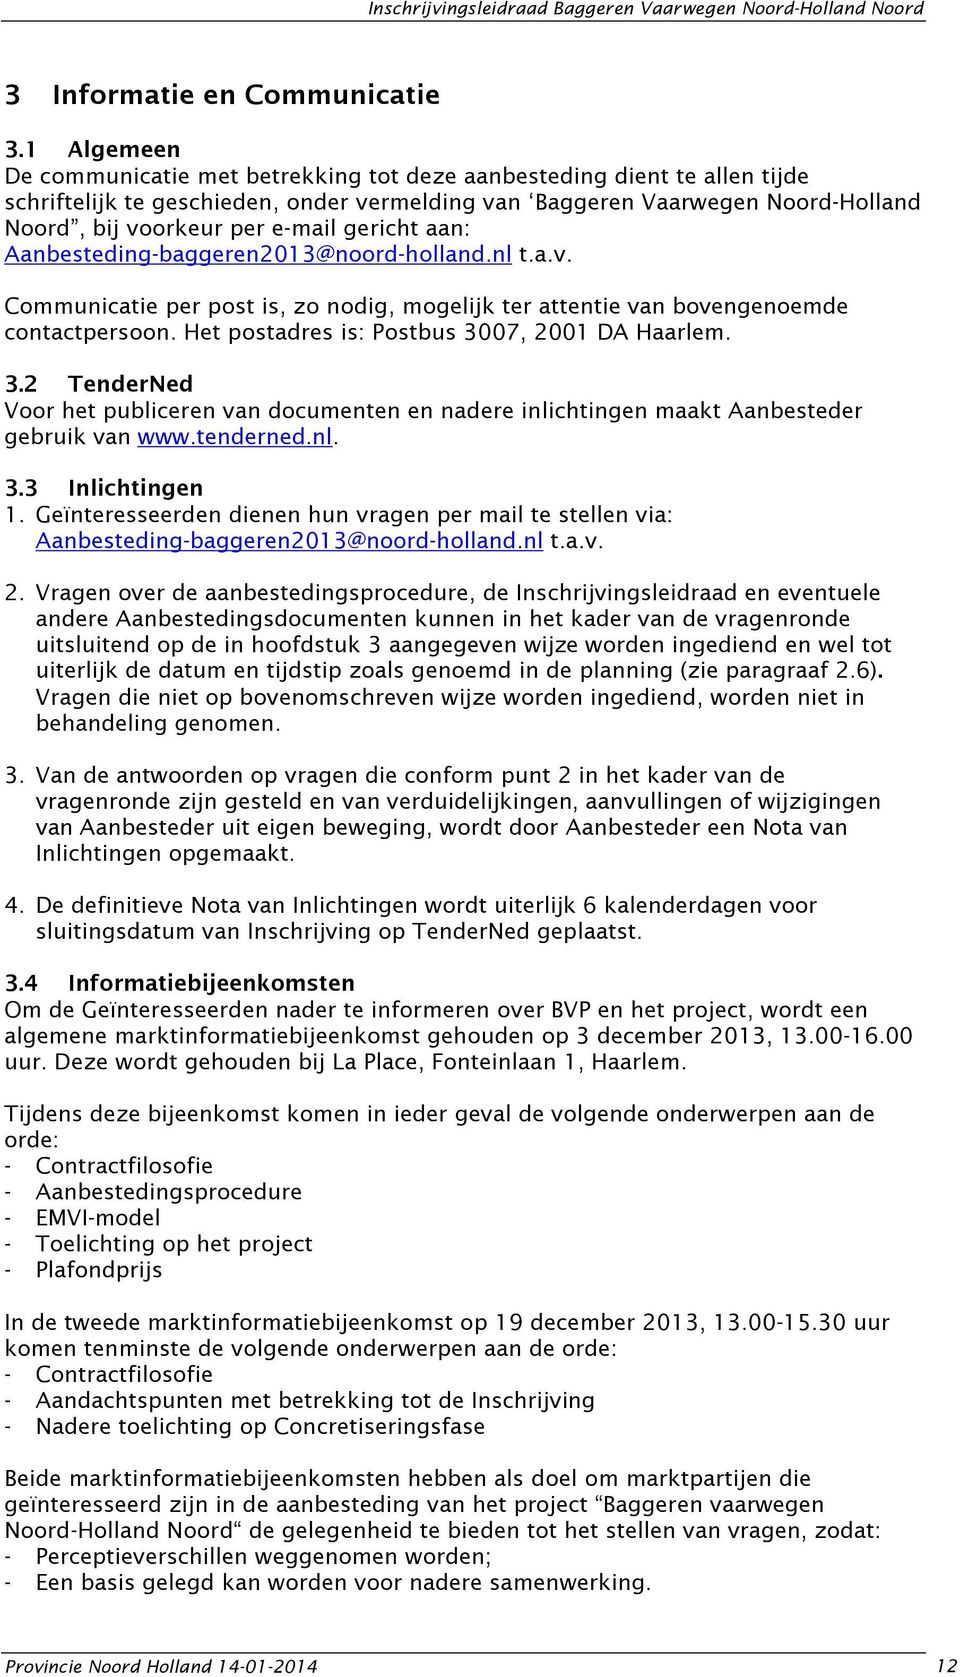 gericht aan: Aanbesteding-baggeren2013@noord-holland.nl t.a.v. Mevr. M. Vogels Communicatie per post is, zo nodig, mogelijk ter attentie van bovengenoemde contactpersoon.